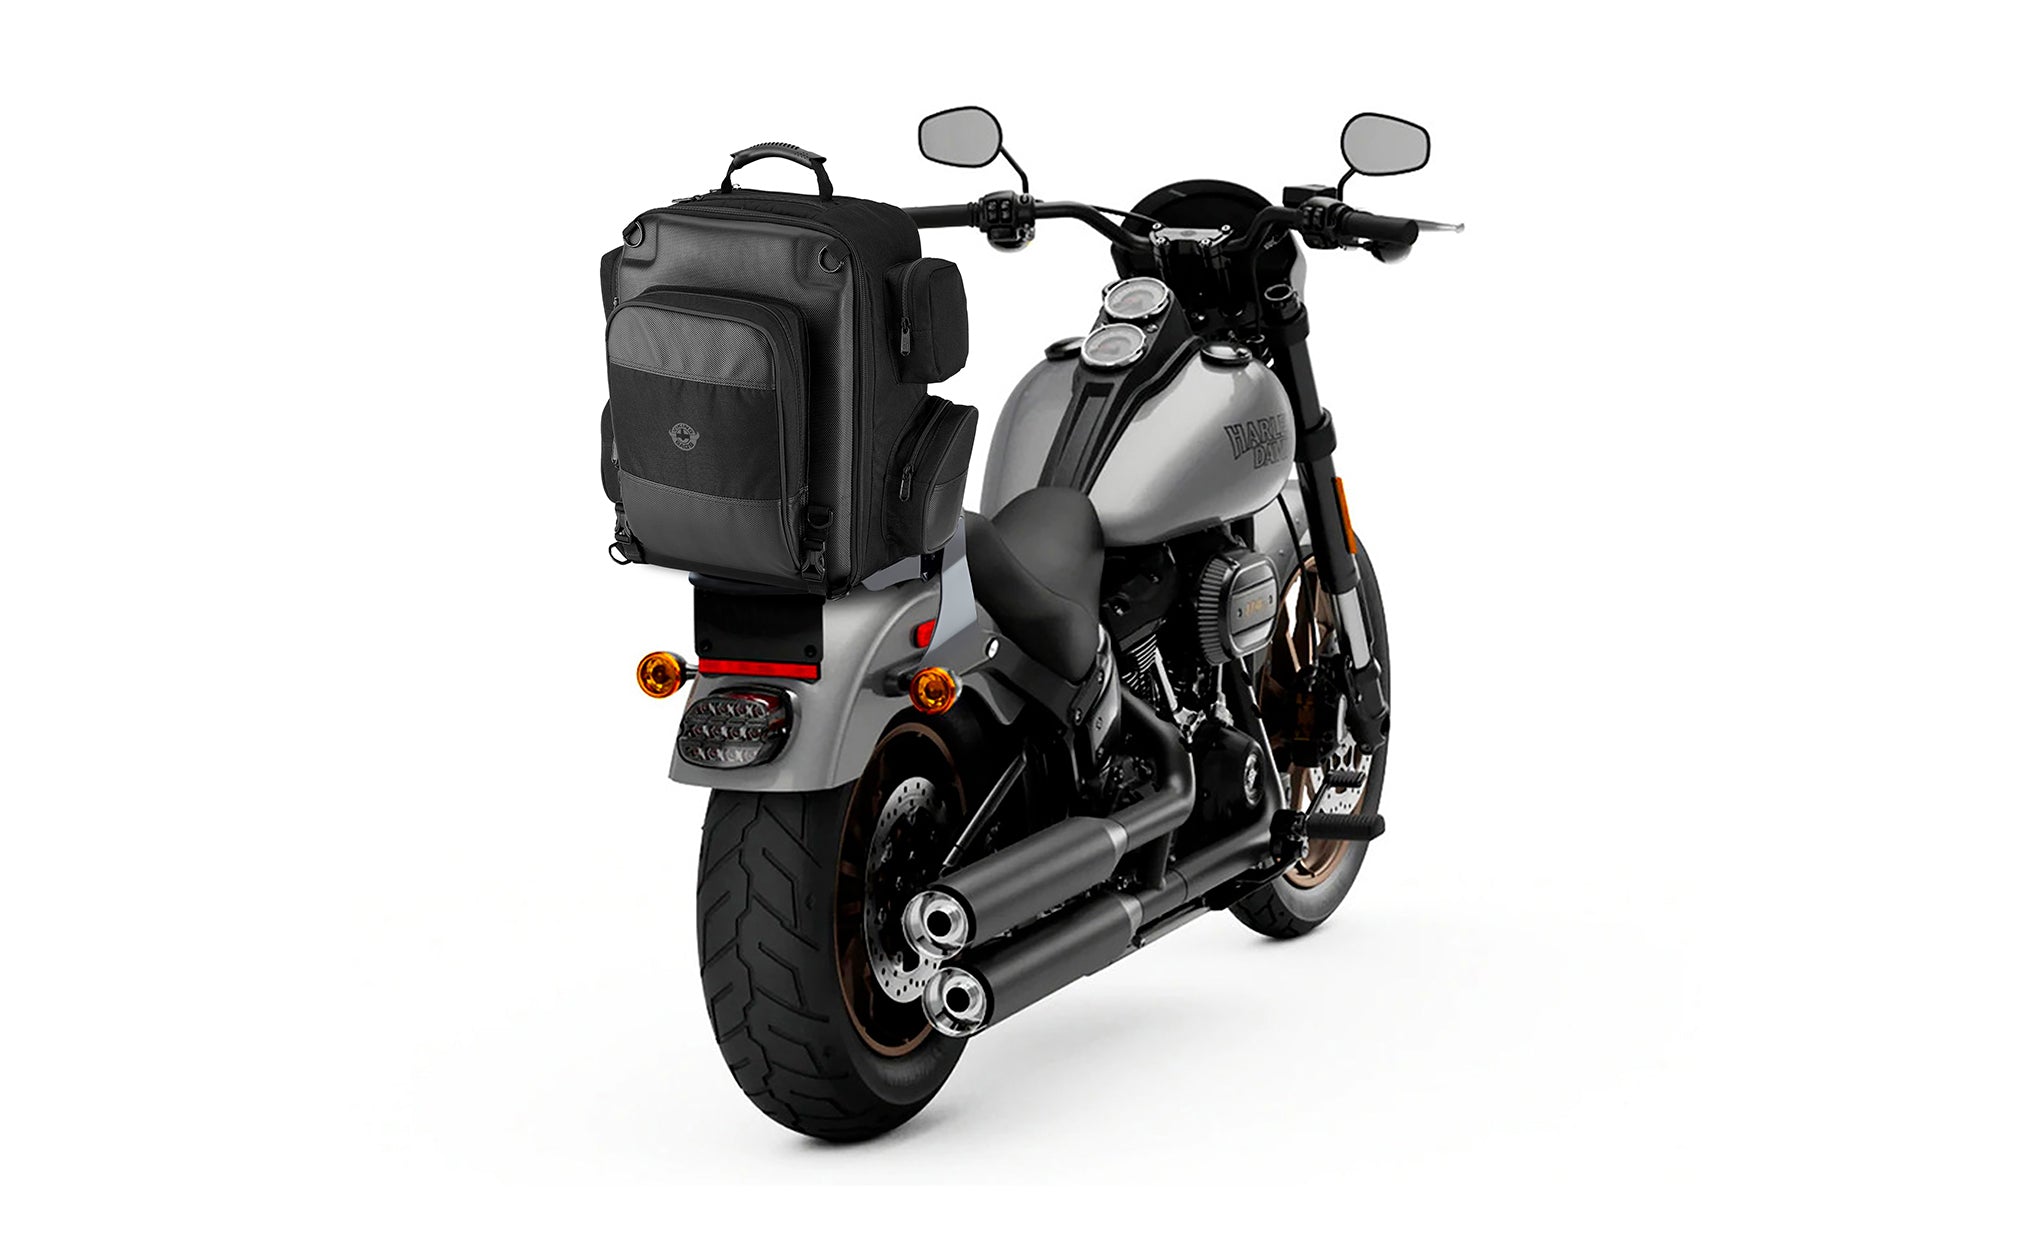 Viking Voyage Large Motorcycle Tail Bag for Harley Davidson Bag on Bike View @expand